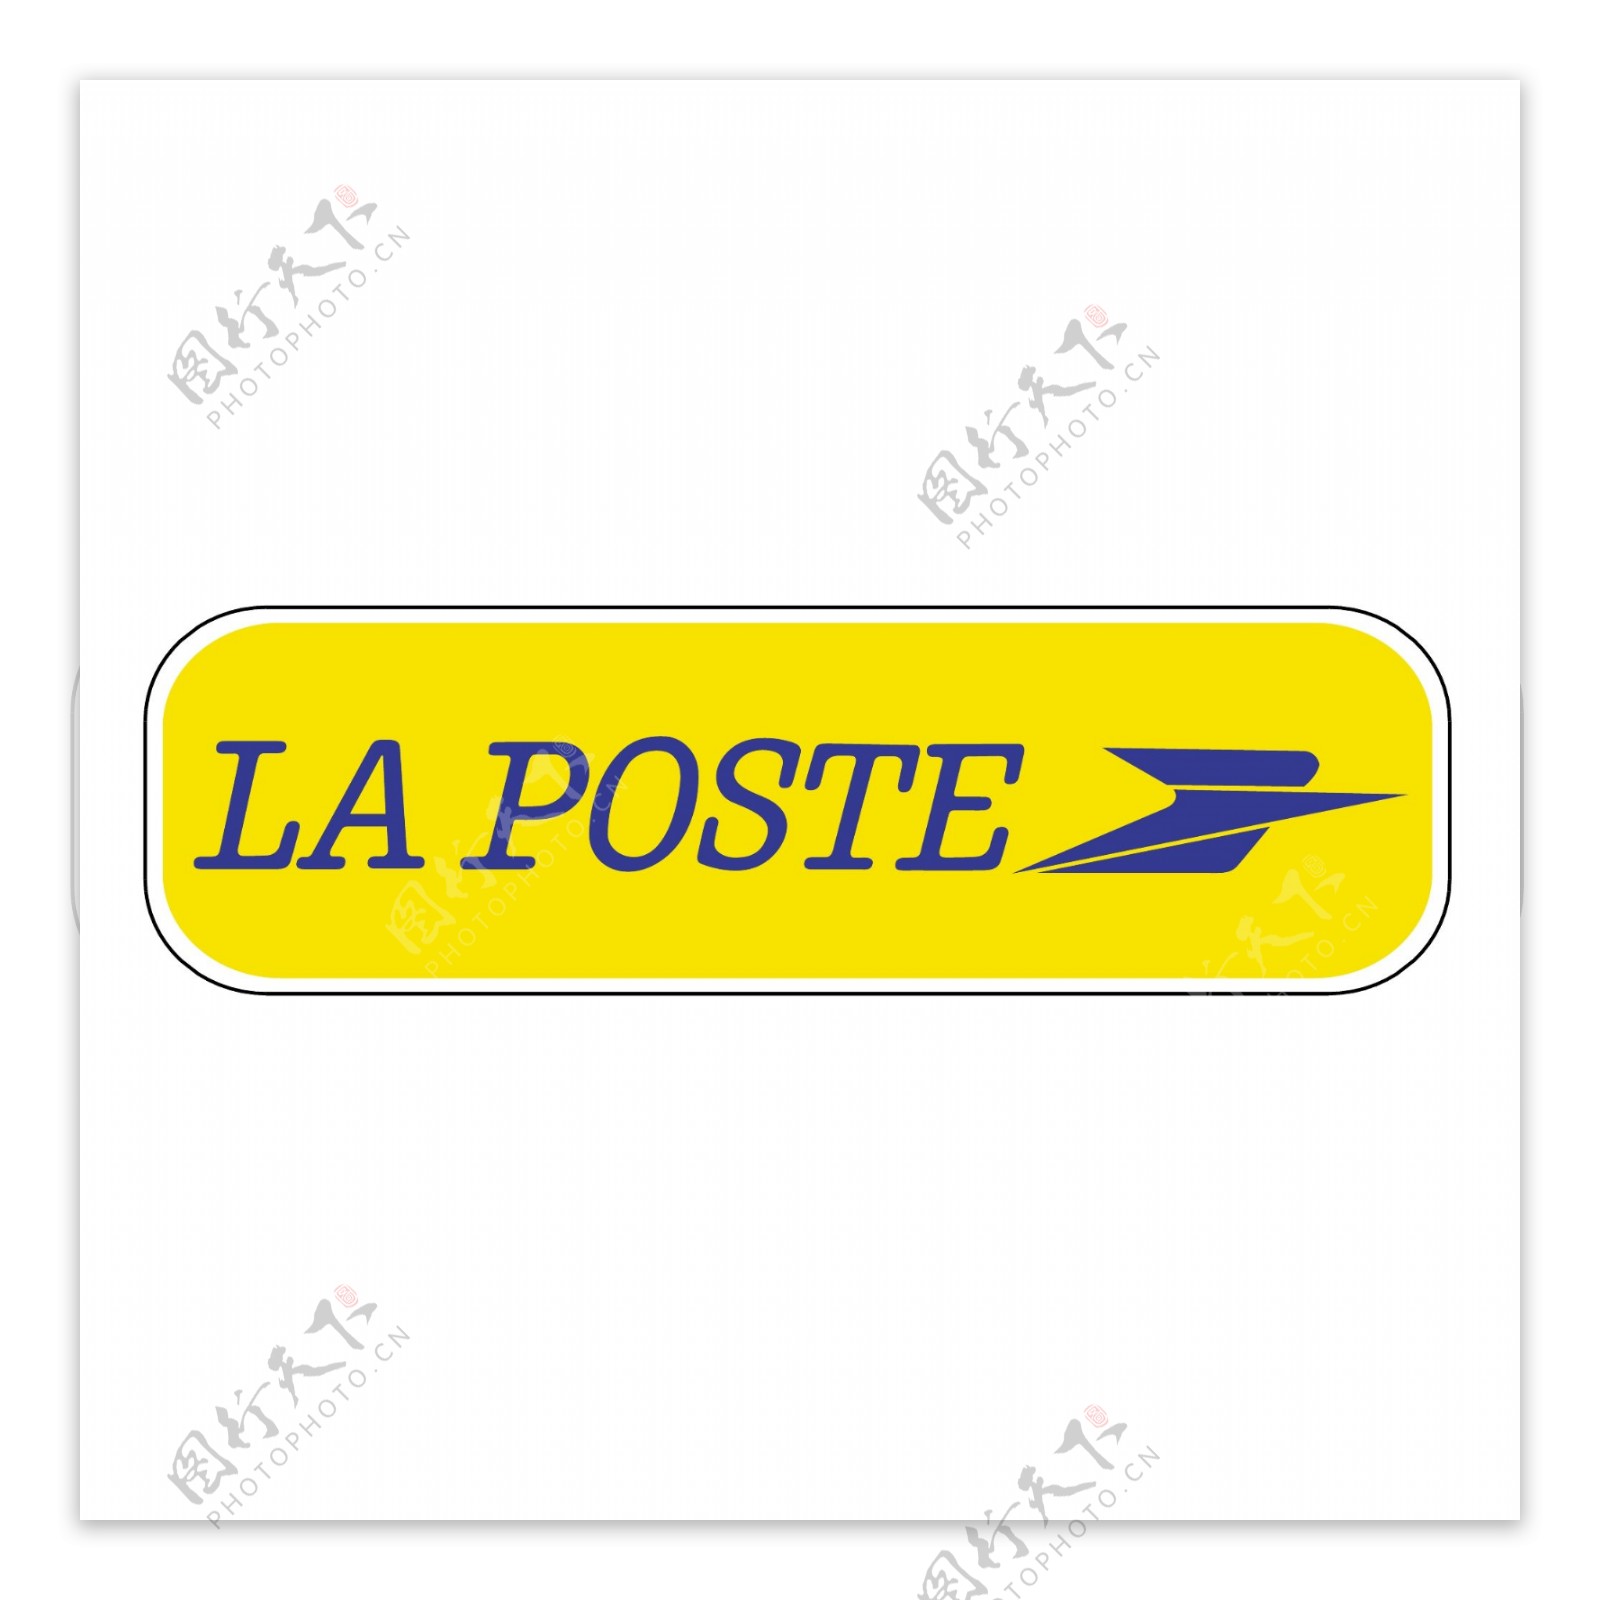 法国邮政3